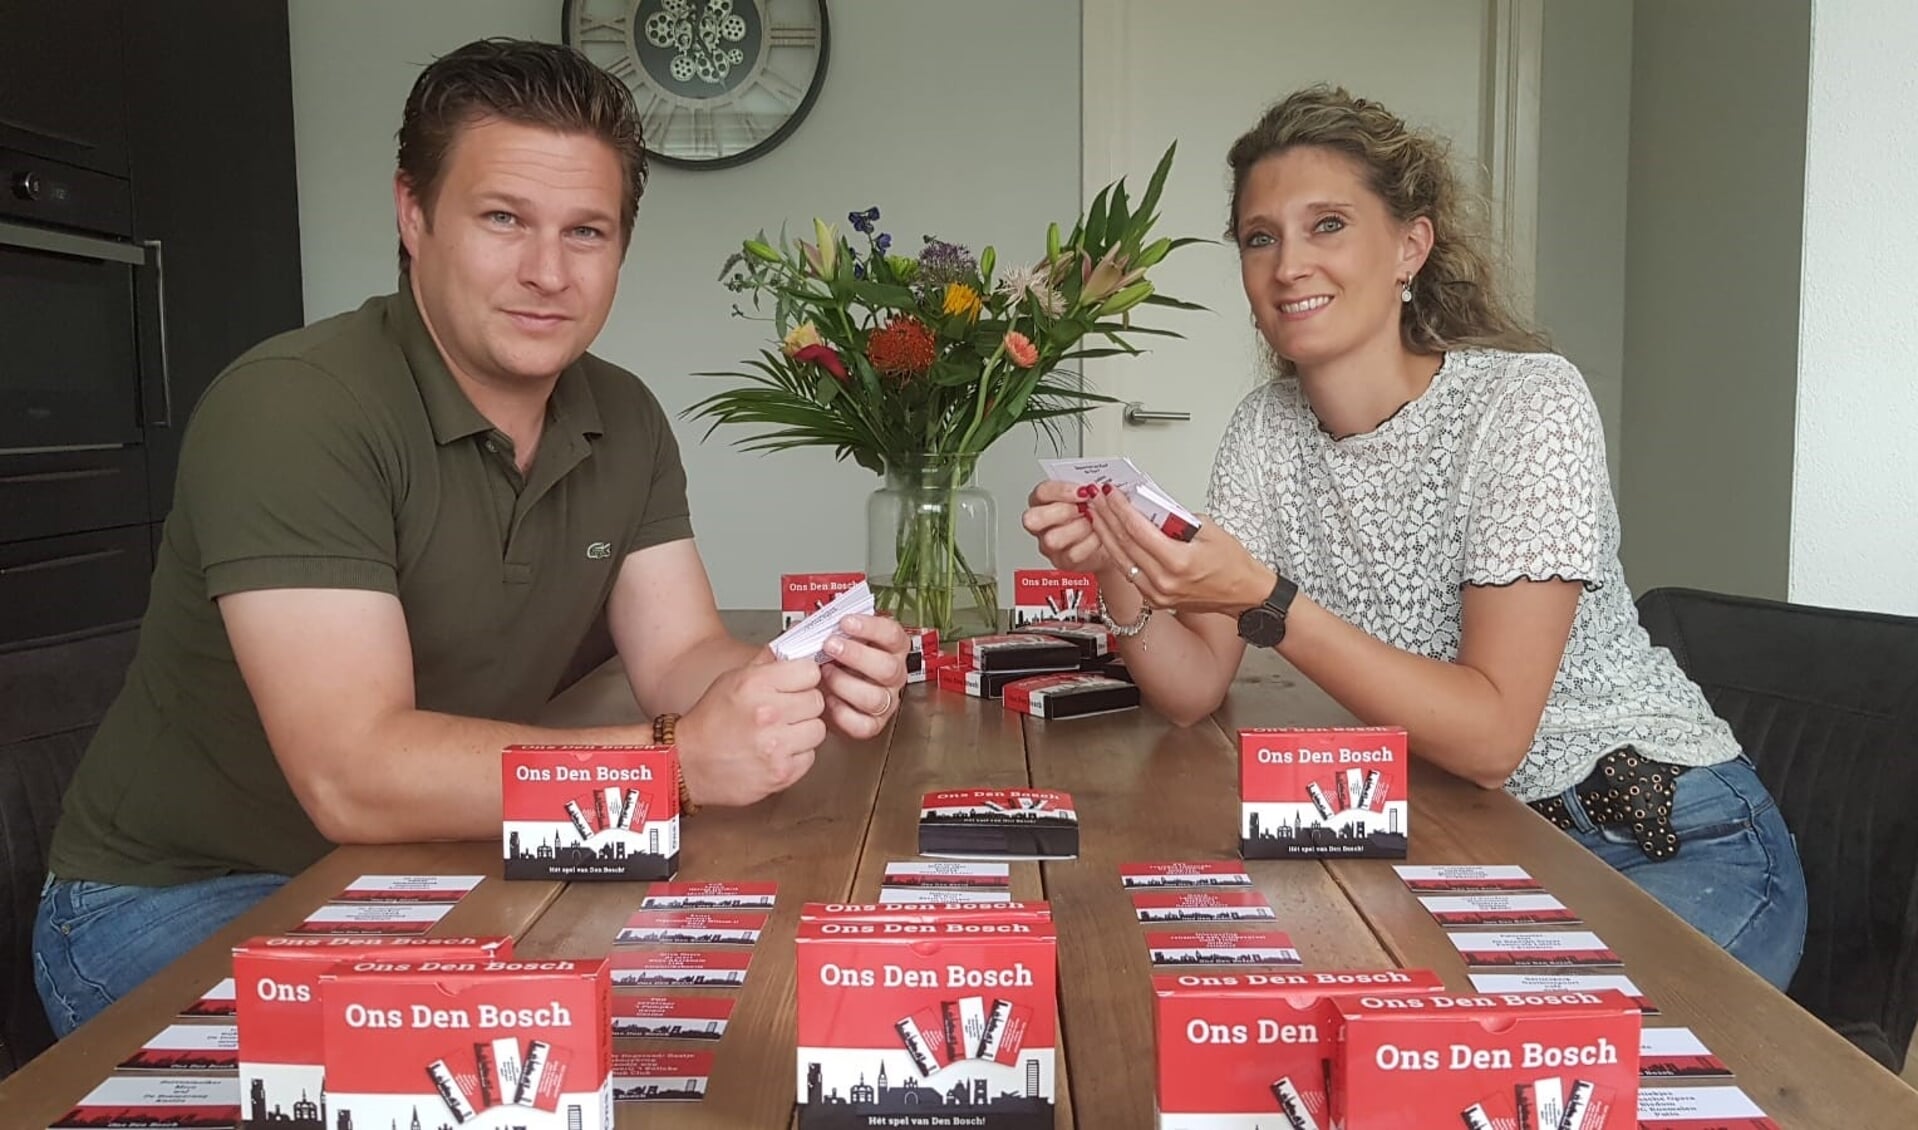 Bram en Melanie van Berkel hopen dat de inwoners van de stad Den Bosch heel veel plezier gaan beleven aan het gezelschapsspel 'Ons Den Bosch'. Een spel dat ongetwijfeld de nodige gespreksstof oplevert.